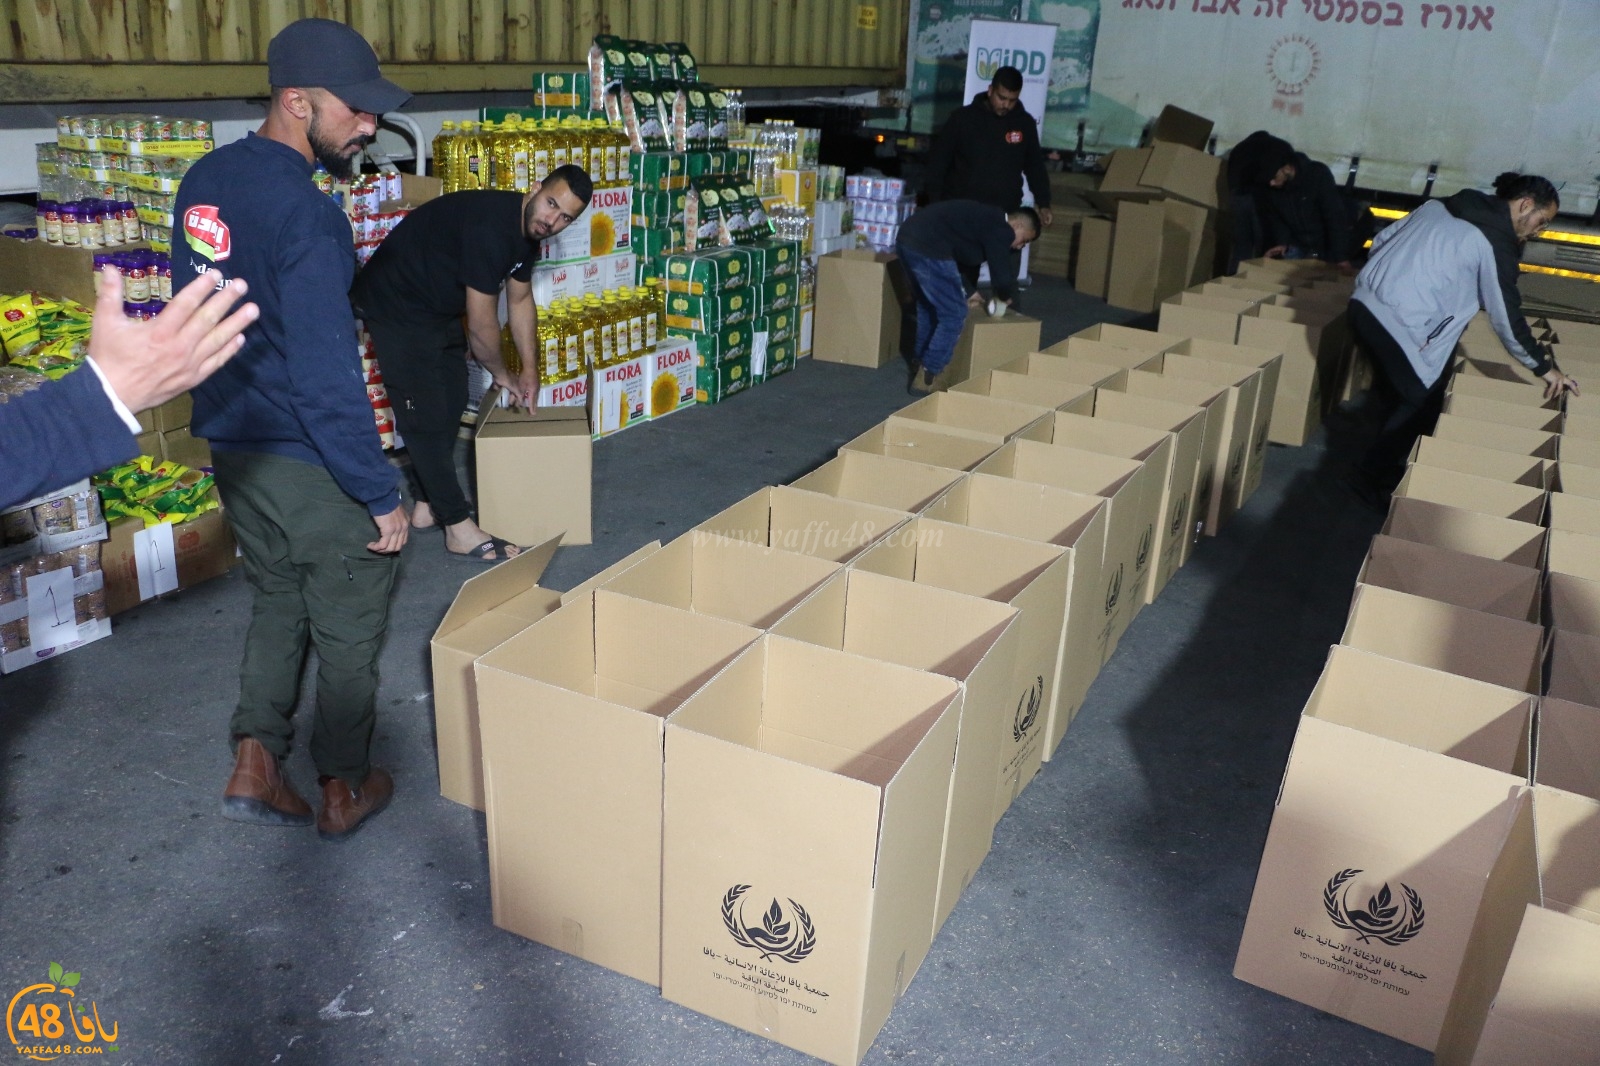  بمناسبة رمضان .. جمعية يافا تُباشر بتوزيع الطرود الغذائية واللحوم